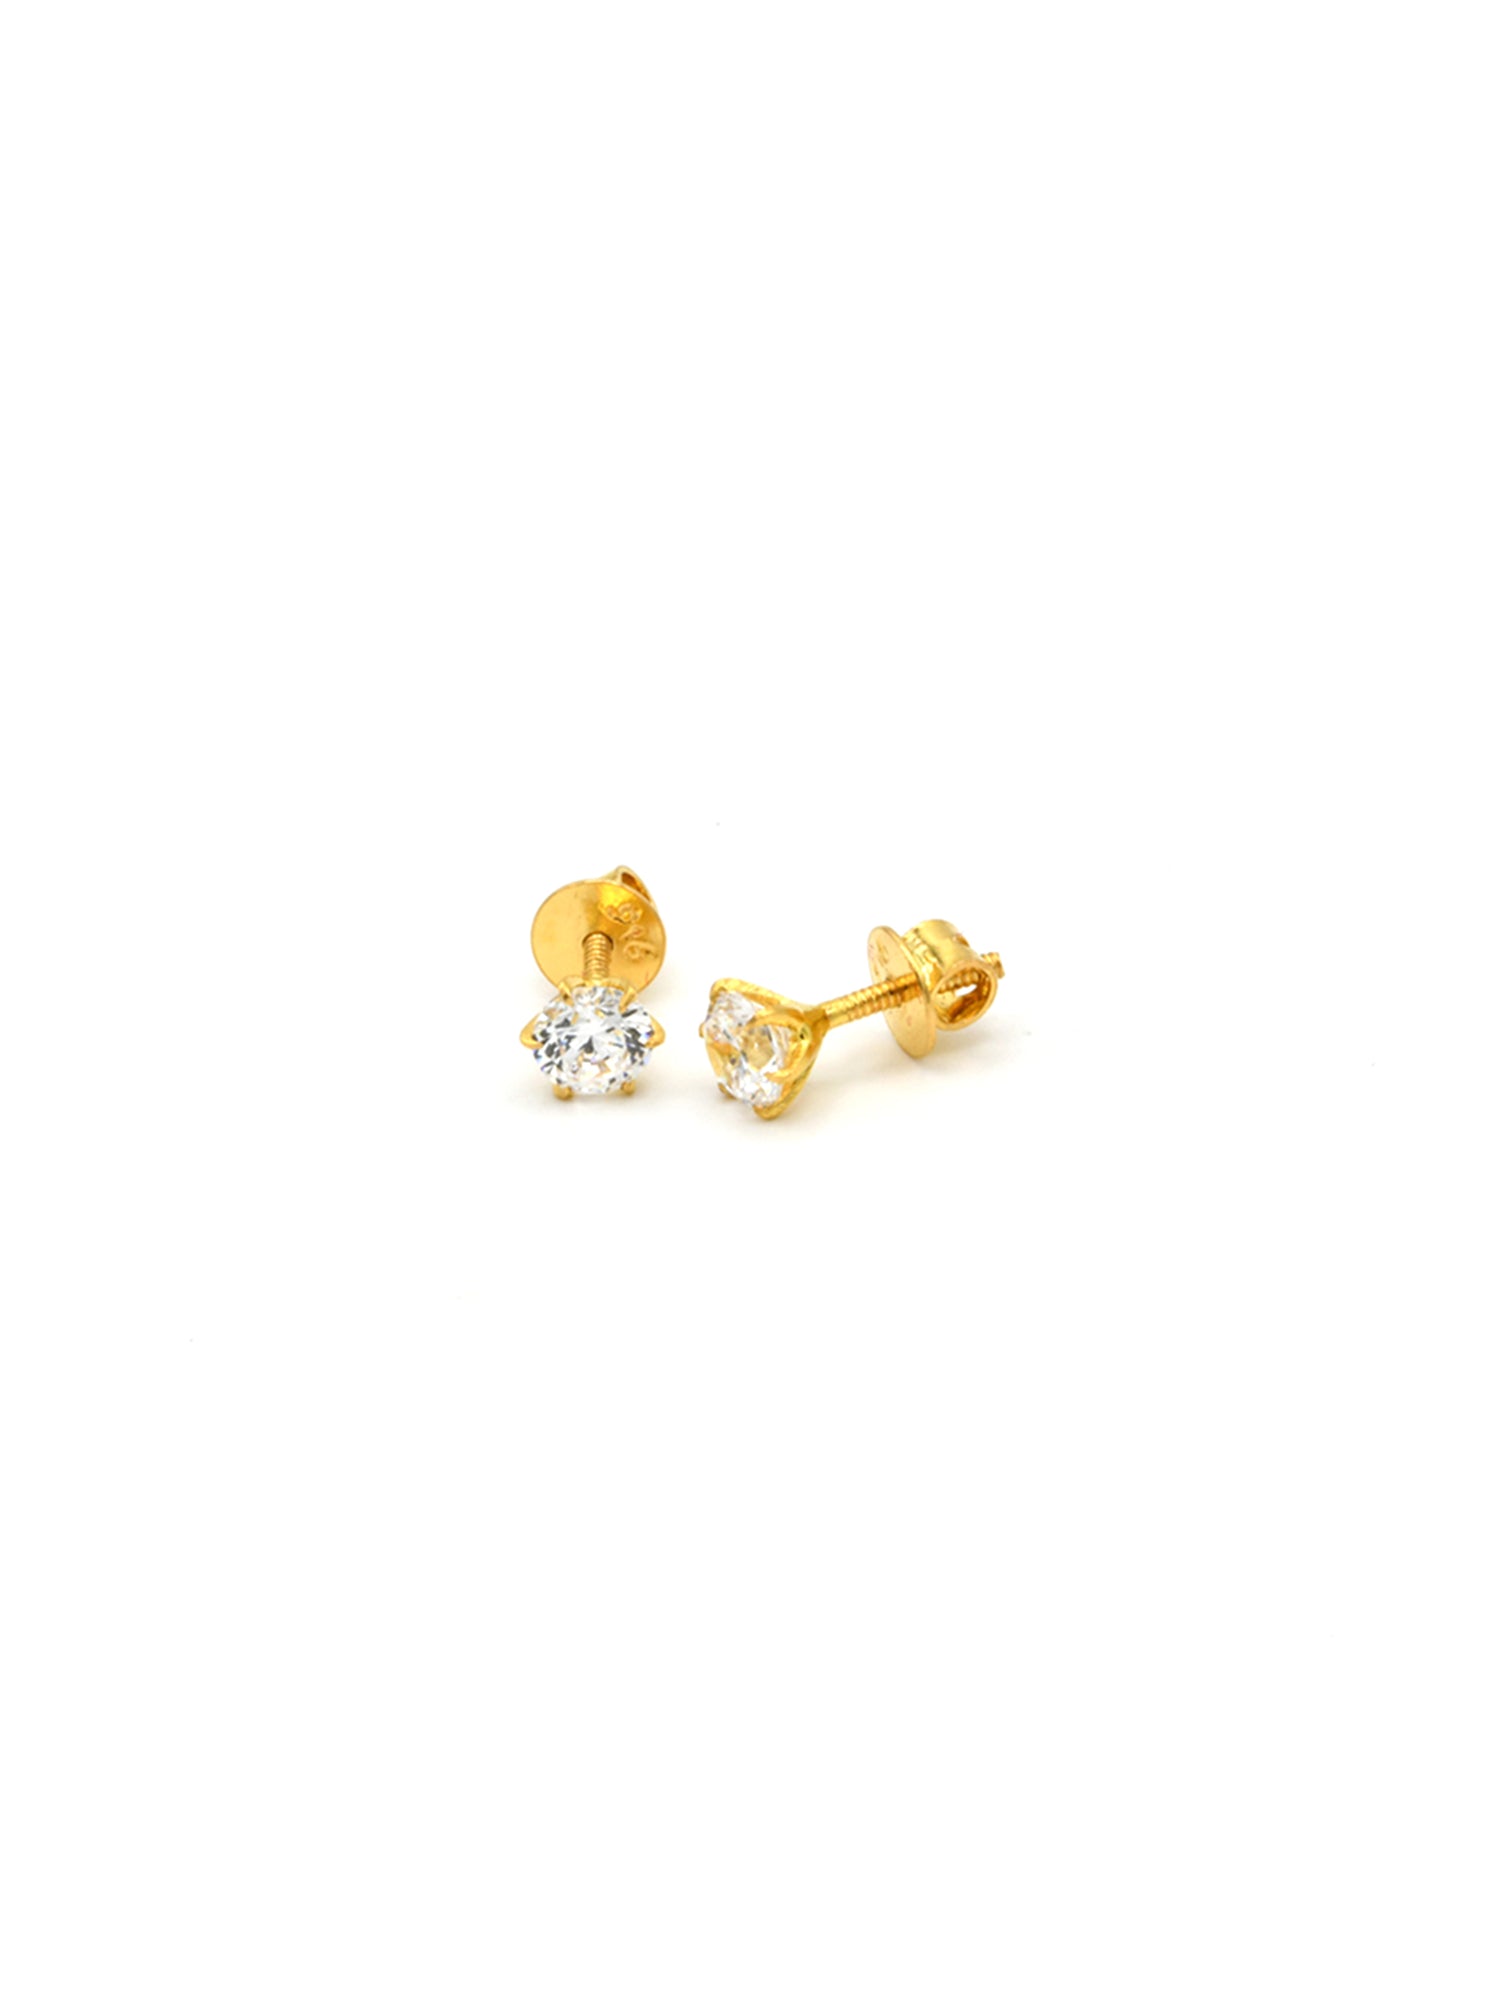 22ct Gold CZ Stud Earrings - Roop Darshan